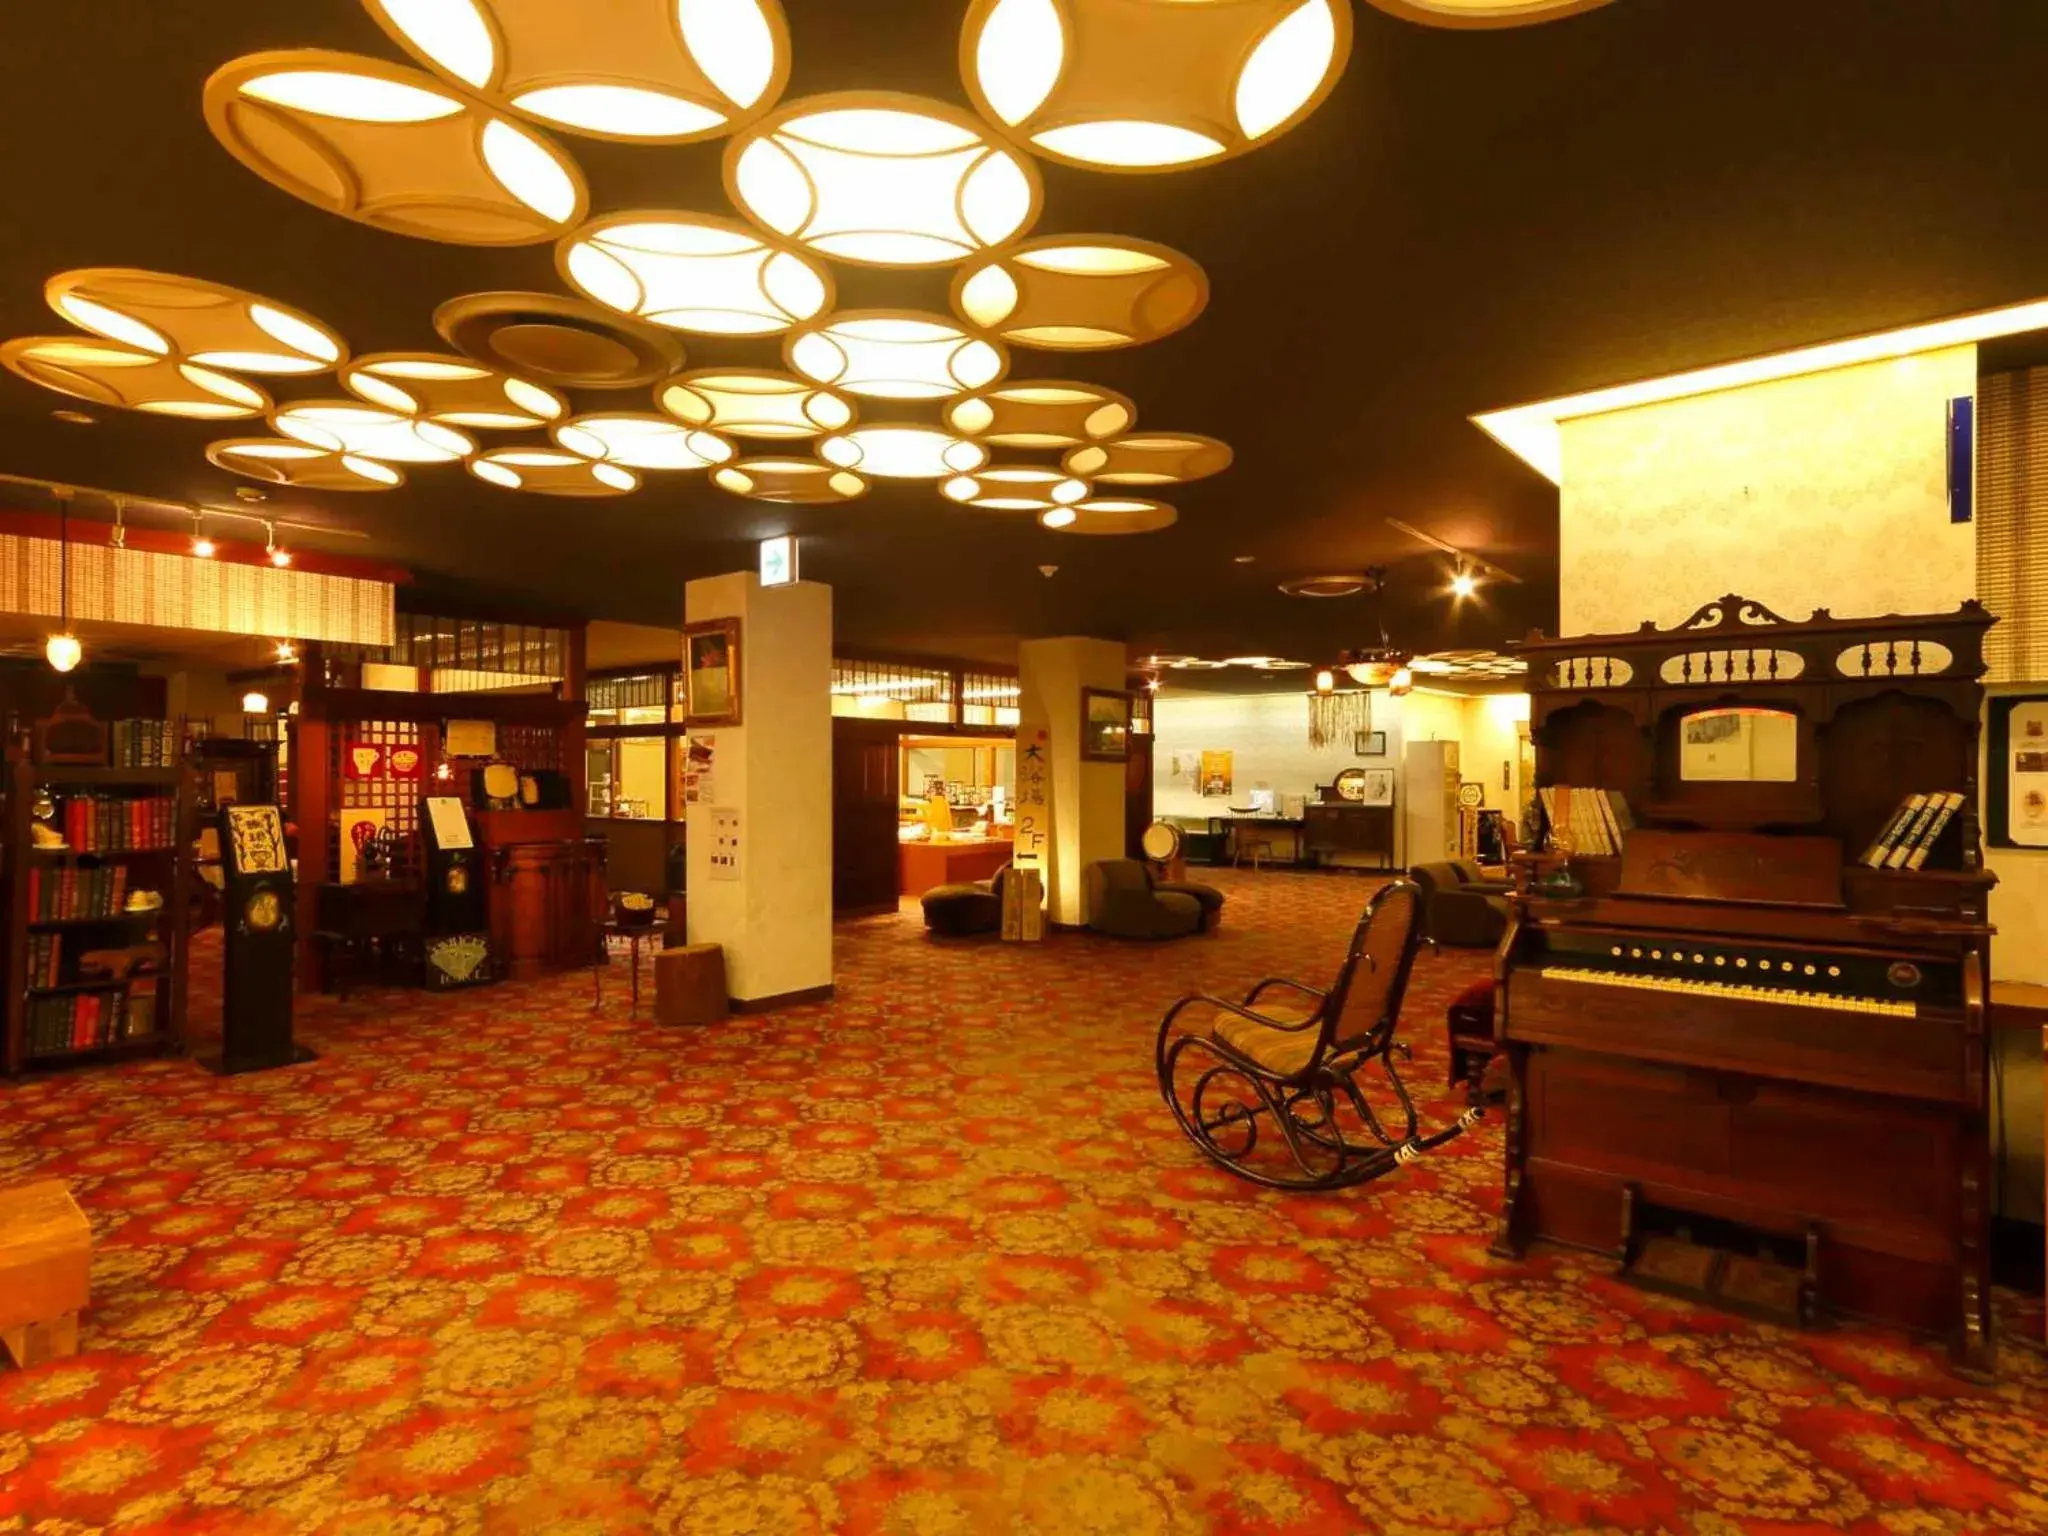 Lobby or reception in Kyotoya Hotel